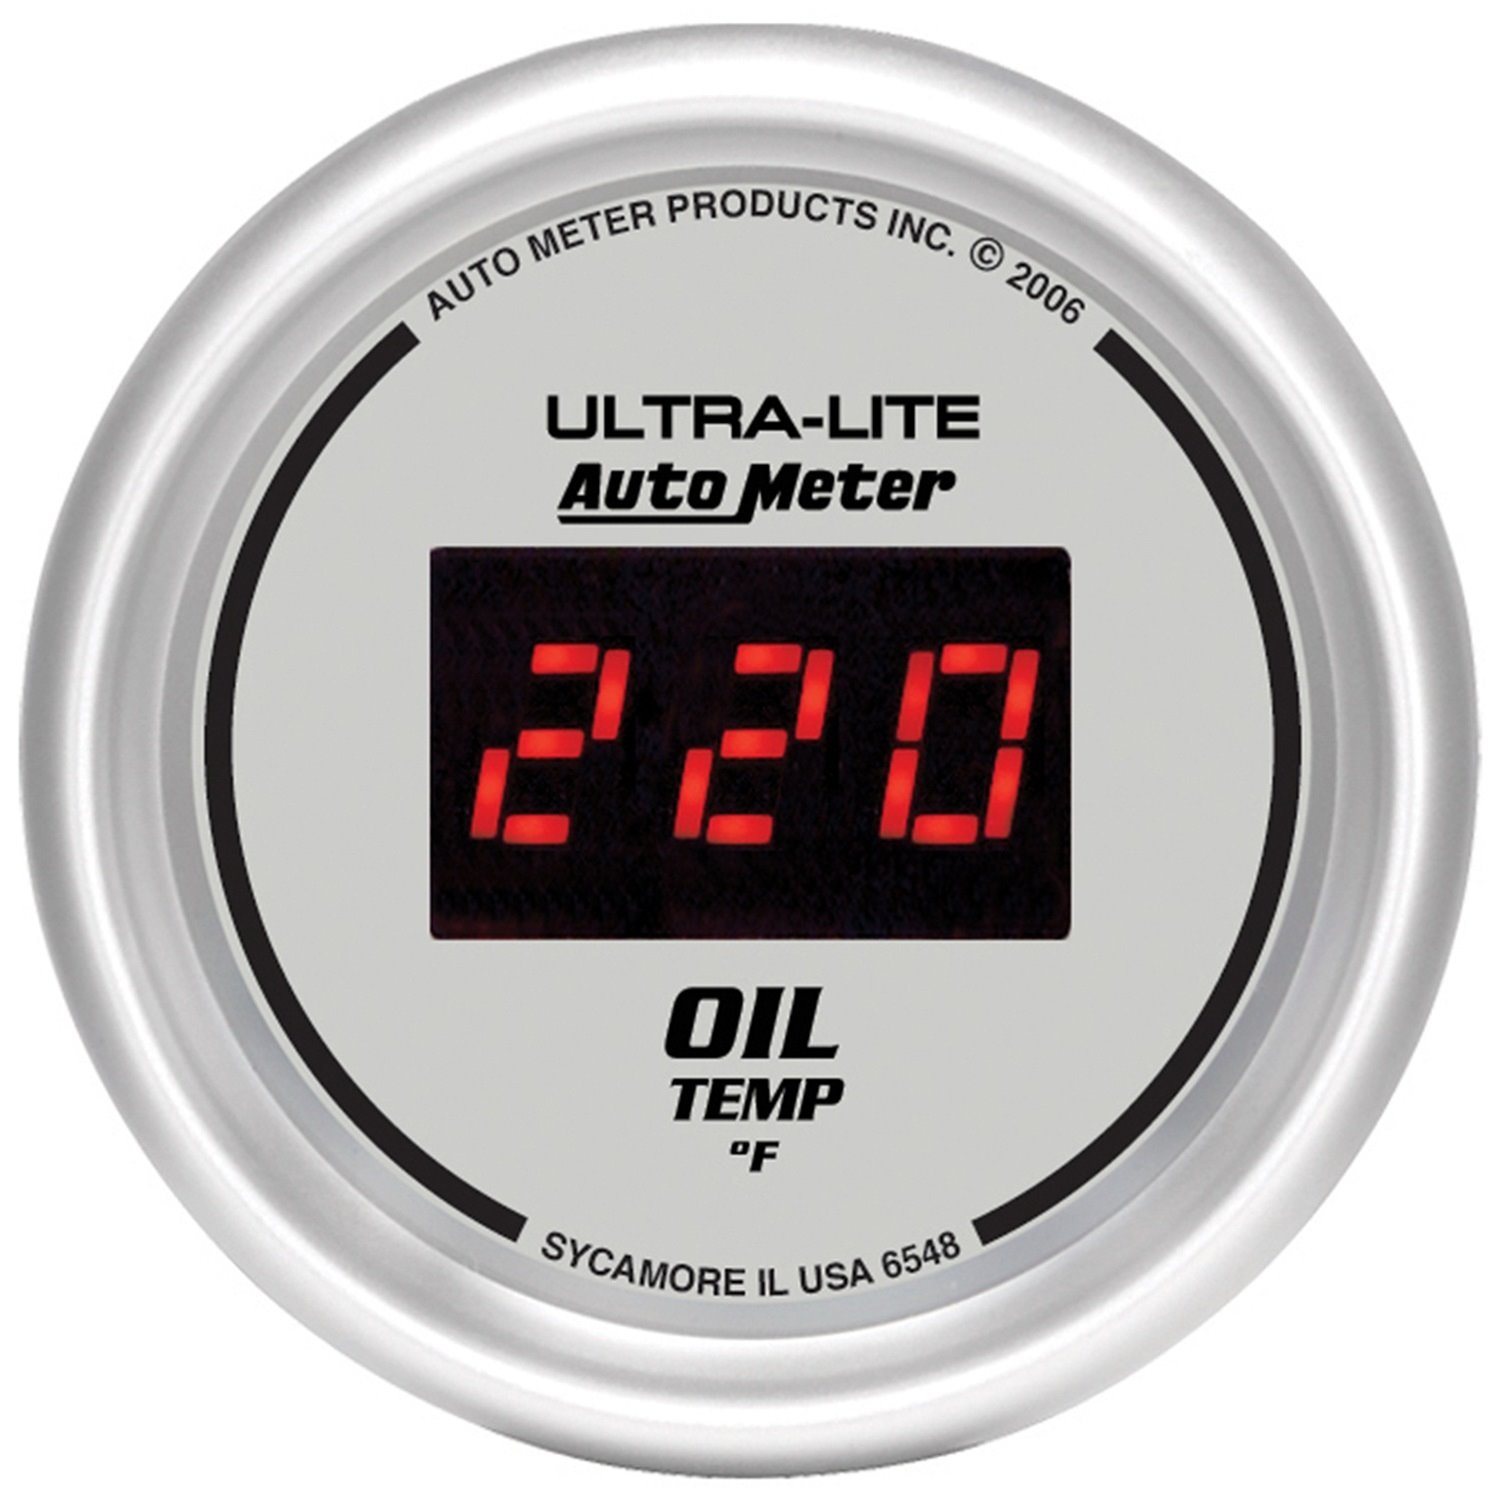 2-1/16" Ultra-Lite Digital Oil Temperature Gauge 0° to 340° F